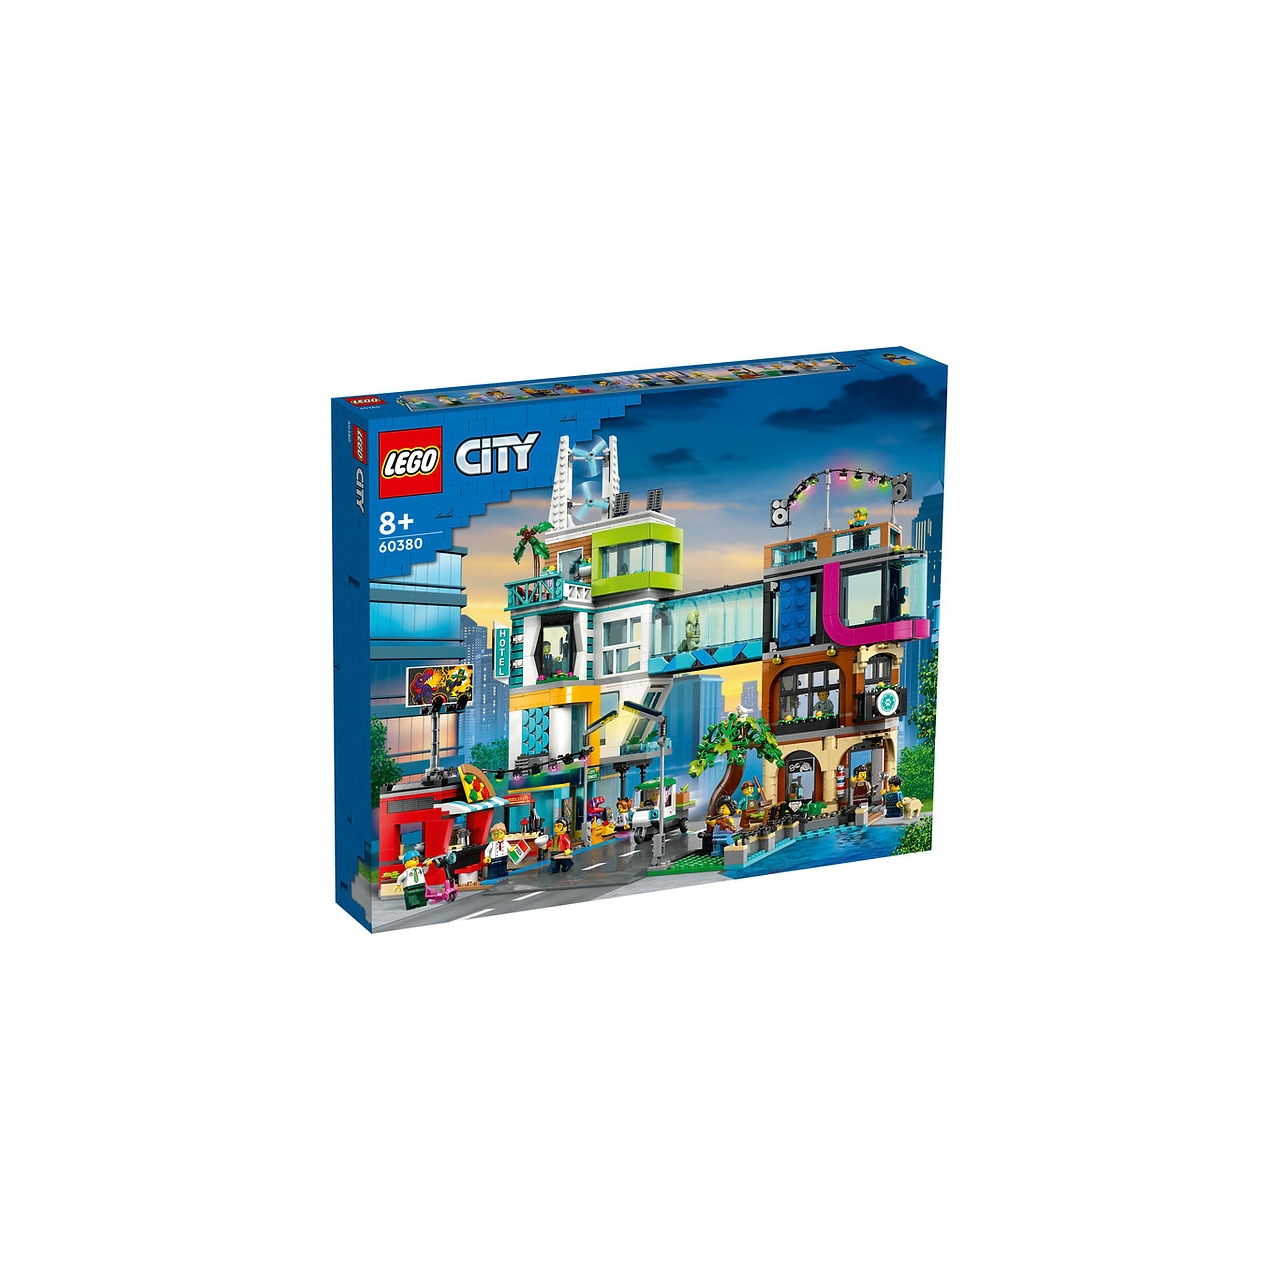 Конструктор Lego City Центр города, 2010 деталей, 60380 карта для гостей города с петербург 1 44т центр 1 13т на китайском яз карта для гостей город